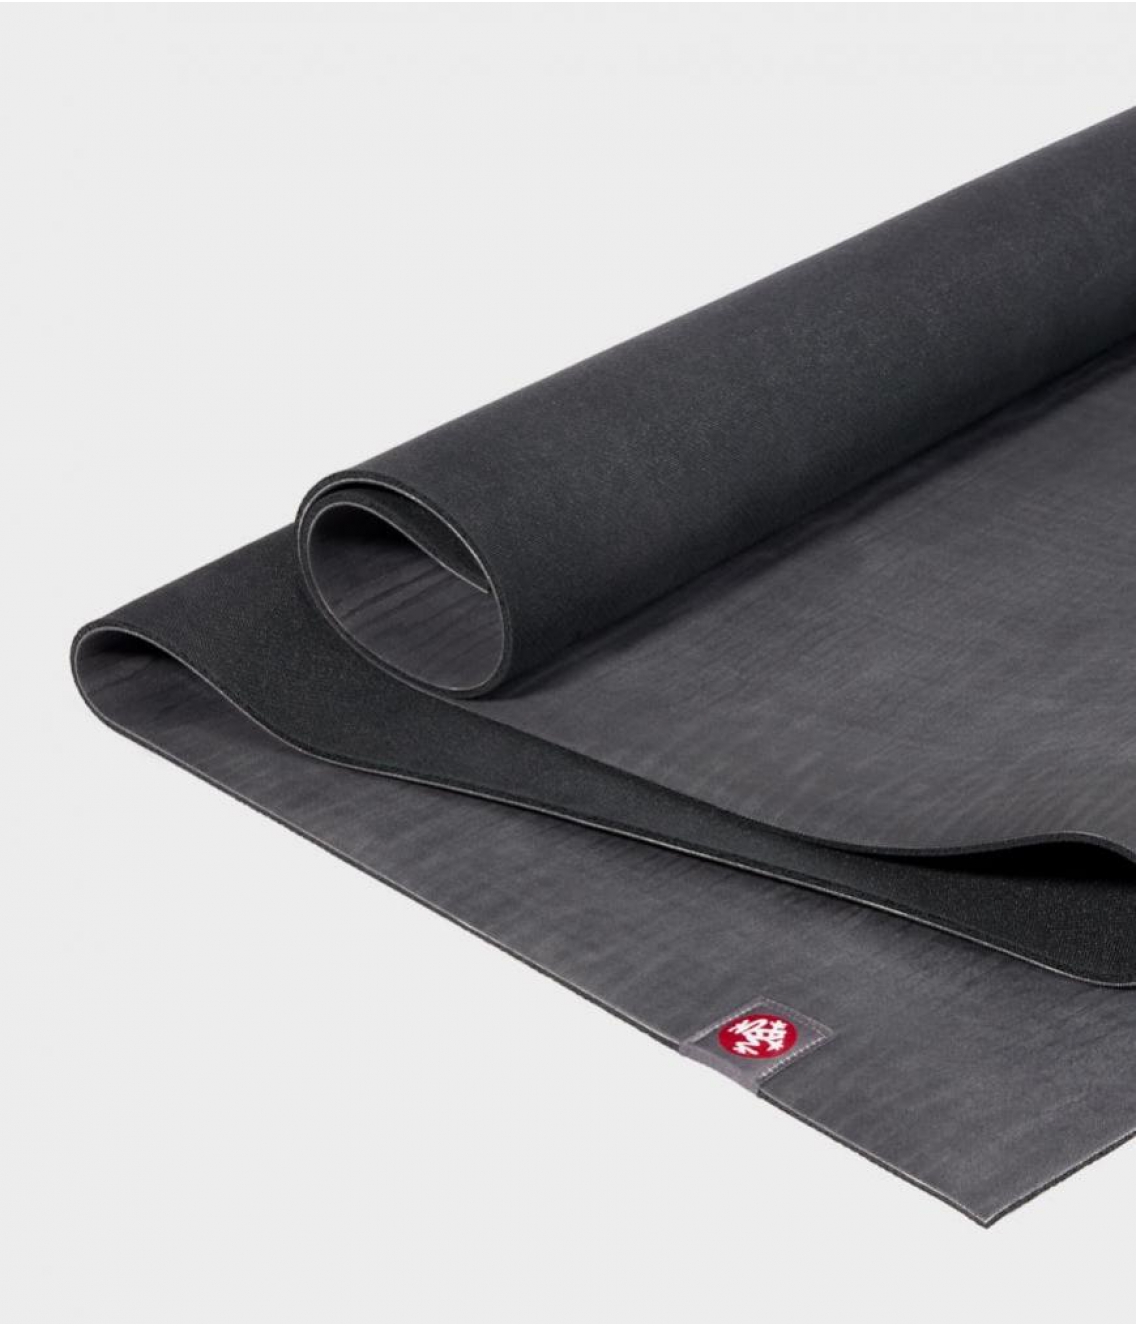 Профессиональный каучуковый коврик для йоги Manduka eKO 206*61*0,6 см - Charcoal (Limited Edition)